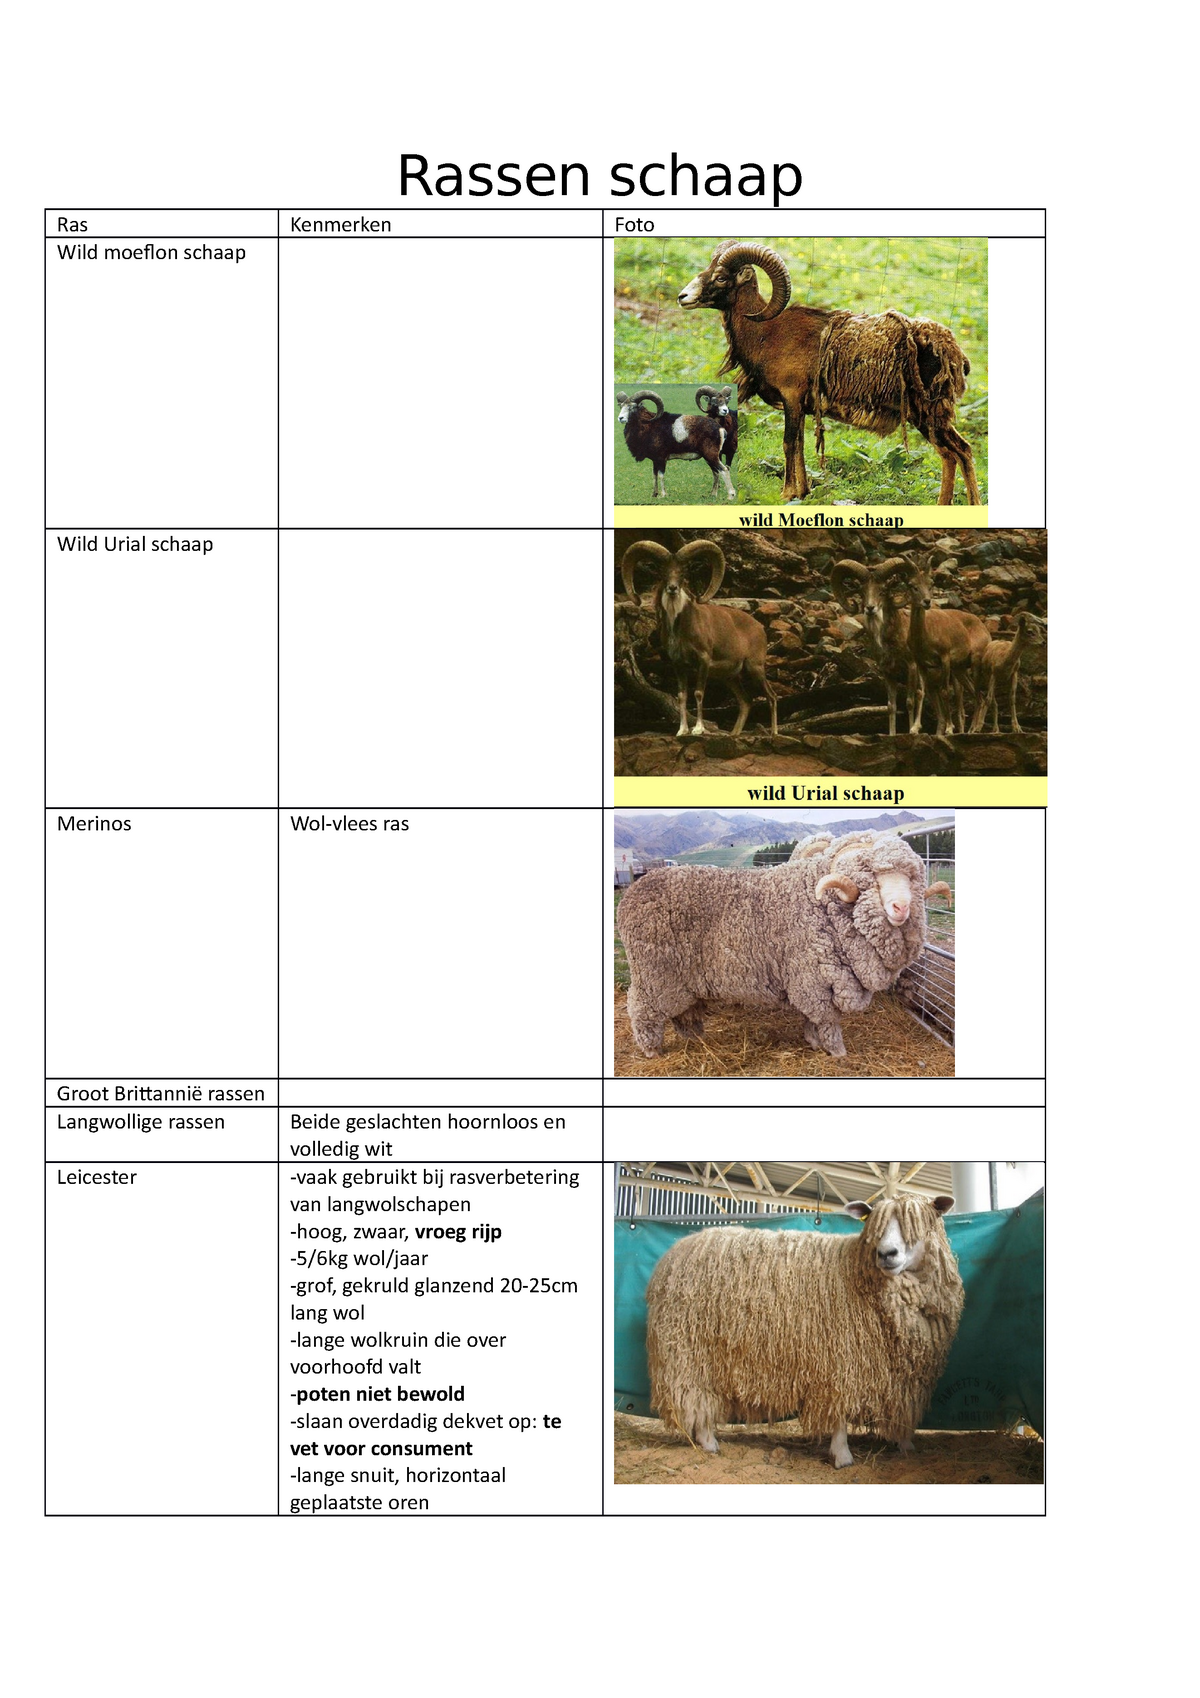 Tsigai-schapen: beschrijving en kenmerken van het ras